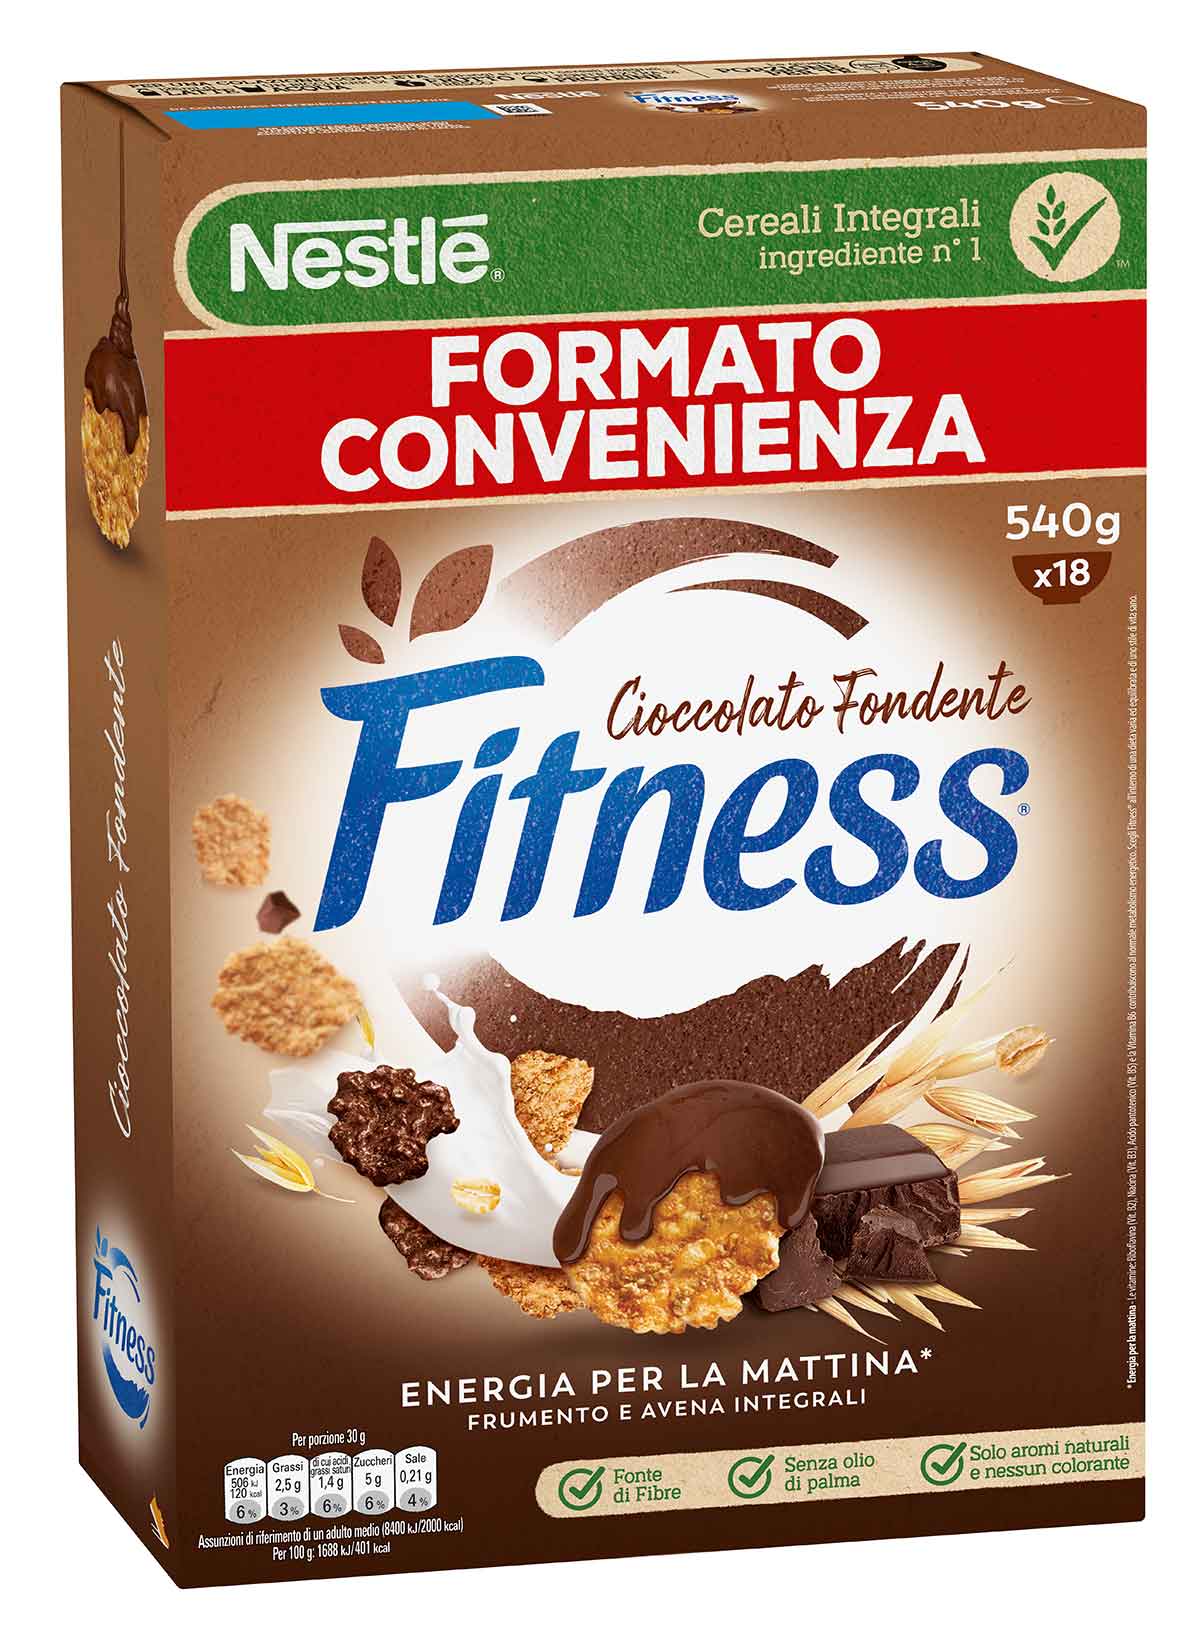 Fitness® CIOCCOLATO FONDENTE Cereali con frumento e avena integrali e fiocchi ricoperti al cioccolato fondente 540g